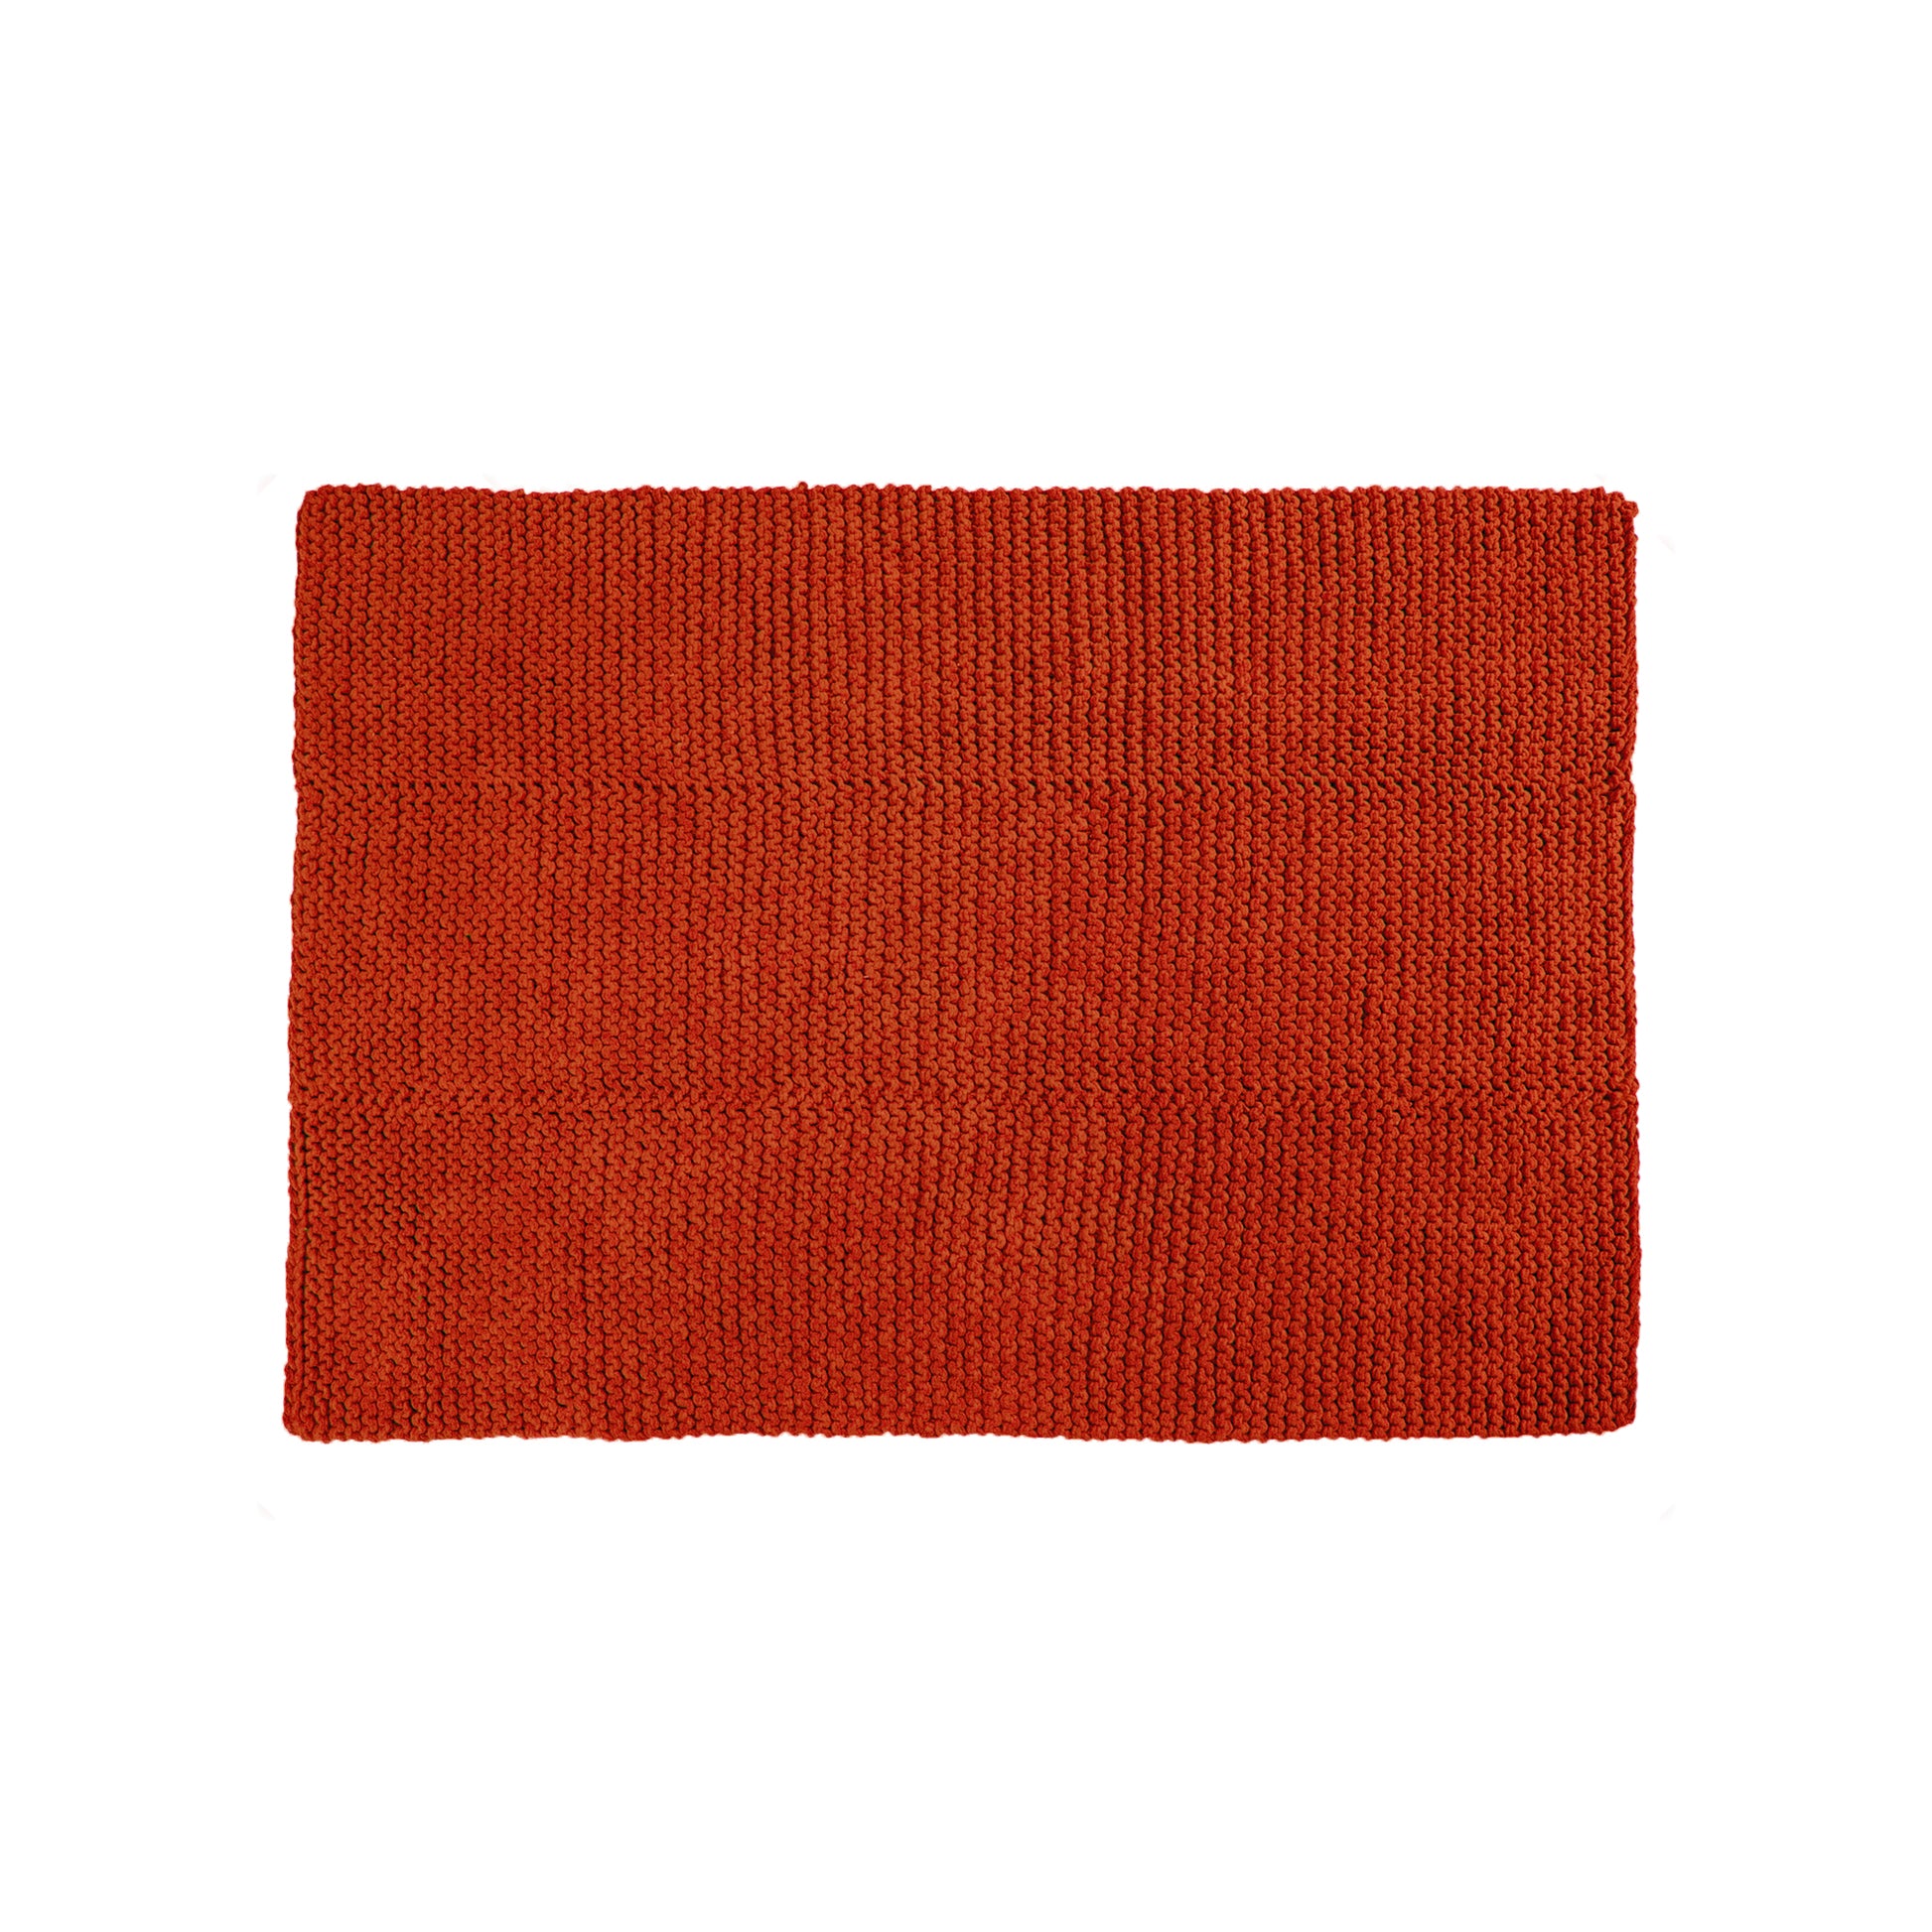 Tapete em tricô artesanal Terracota, com fio 100% algodão. Dimensões: Largura - 150cm; Comprimento - 200cm. 